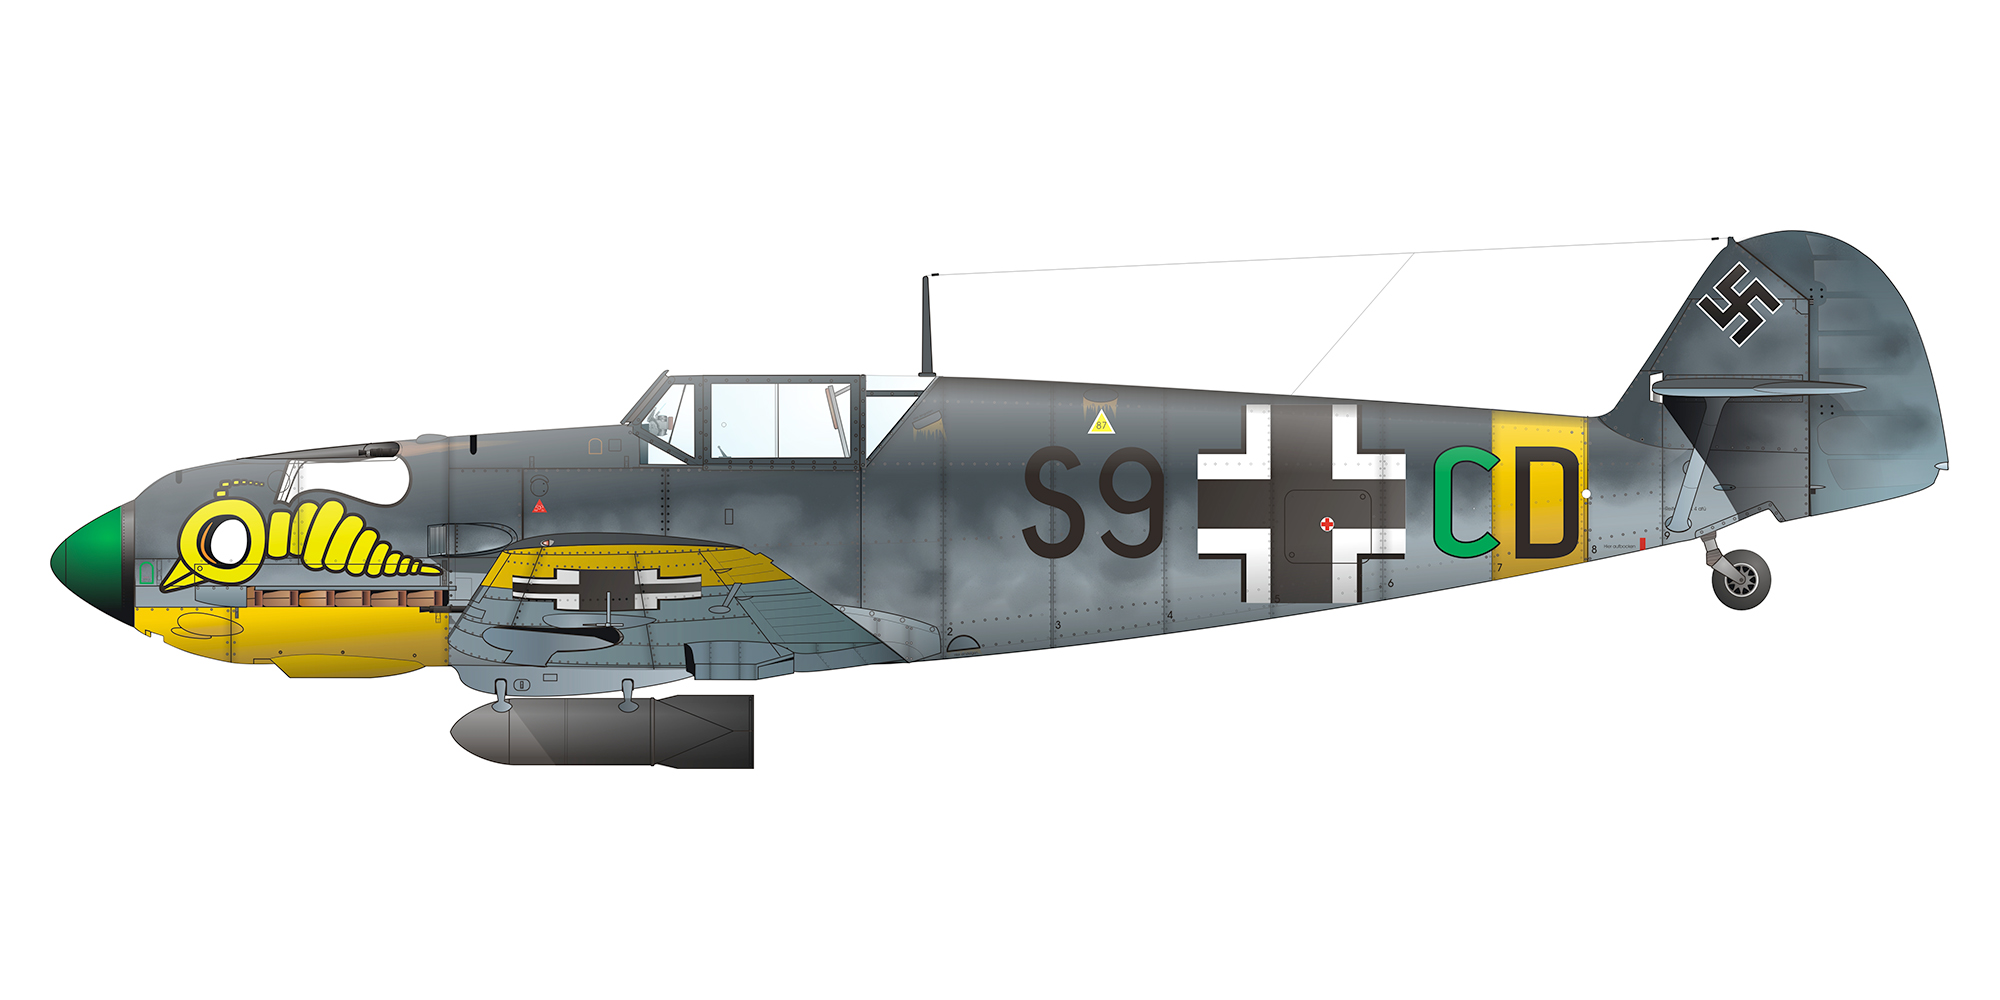 Messerschmitt Bf 109E7B Stab III.ZG1 S9+CD Russia 1942 0B